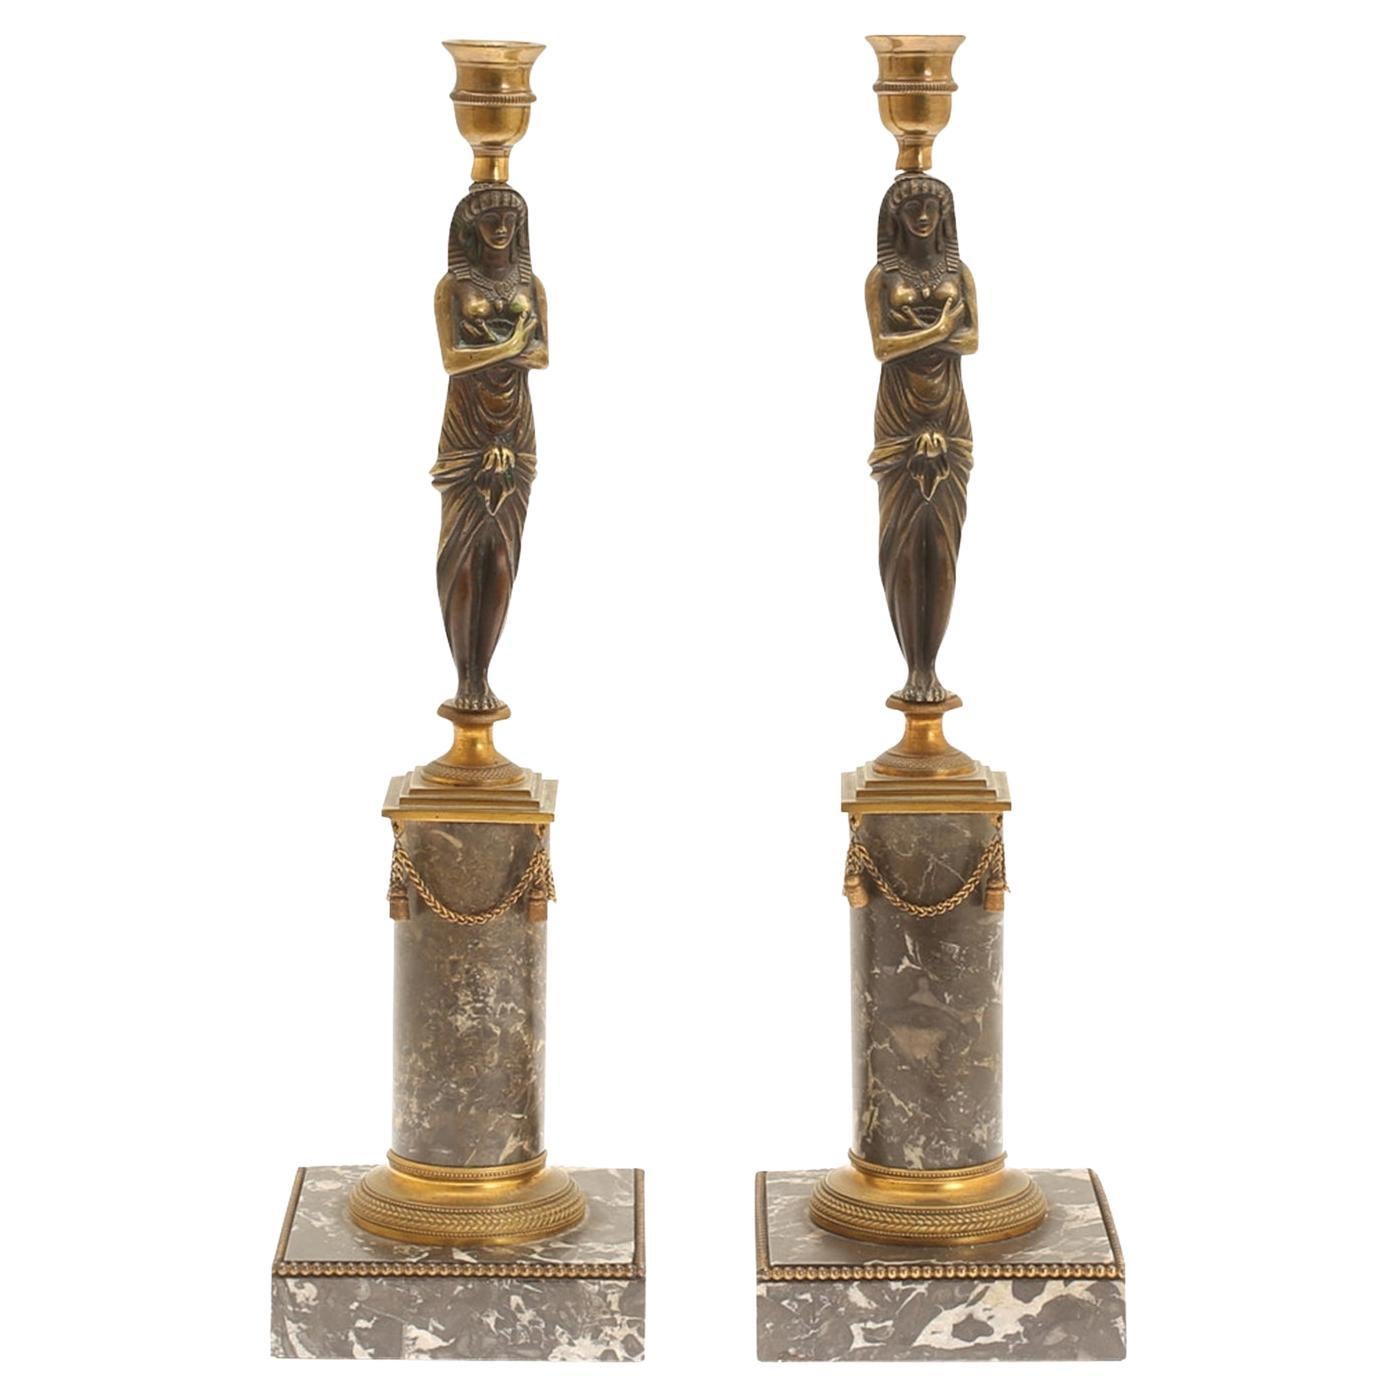 Paire de bougeoirs égyptiens en bronze et or du 19ème siècle - Bougeoirs en marbre